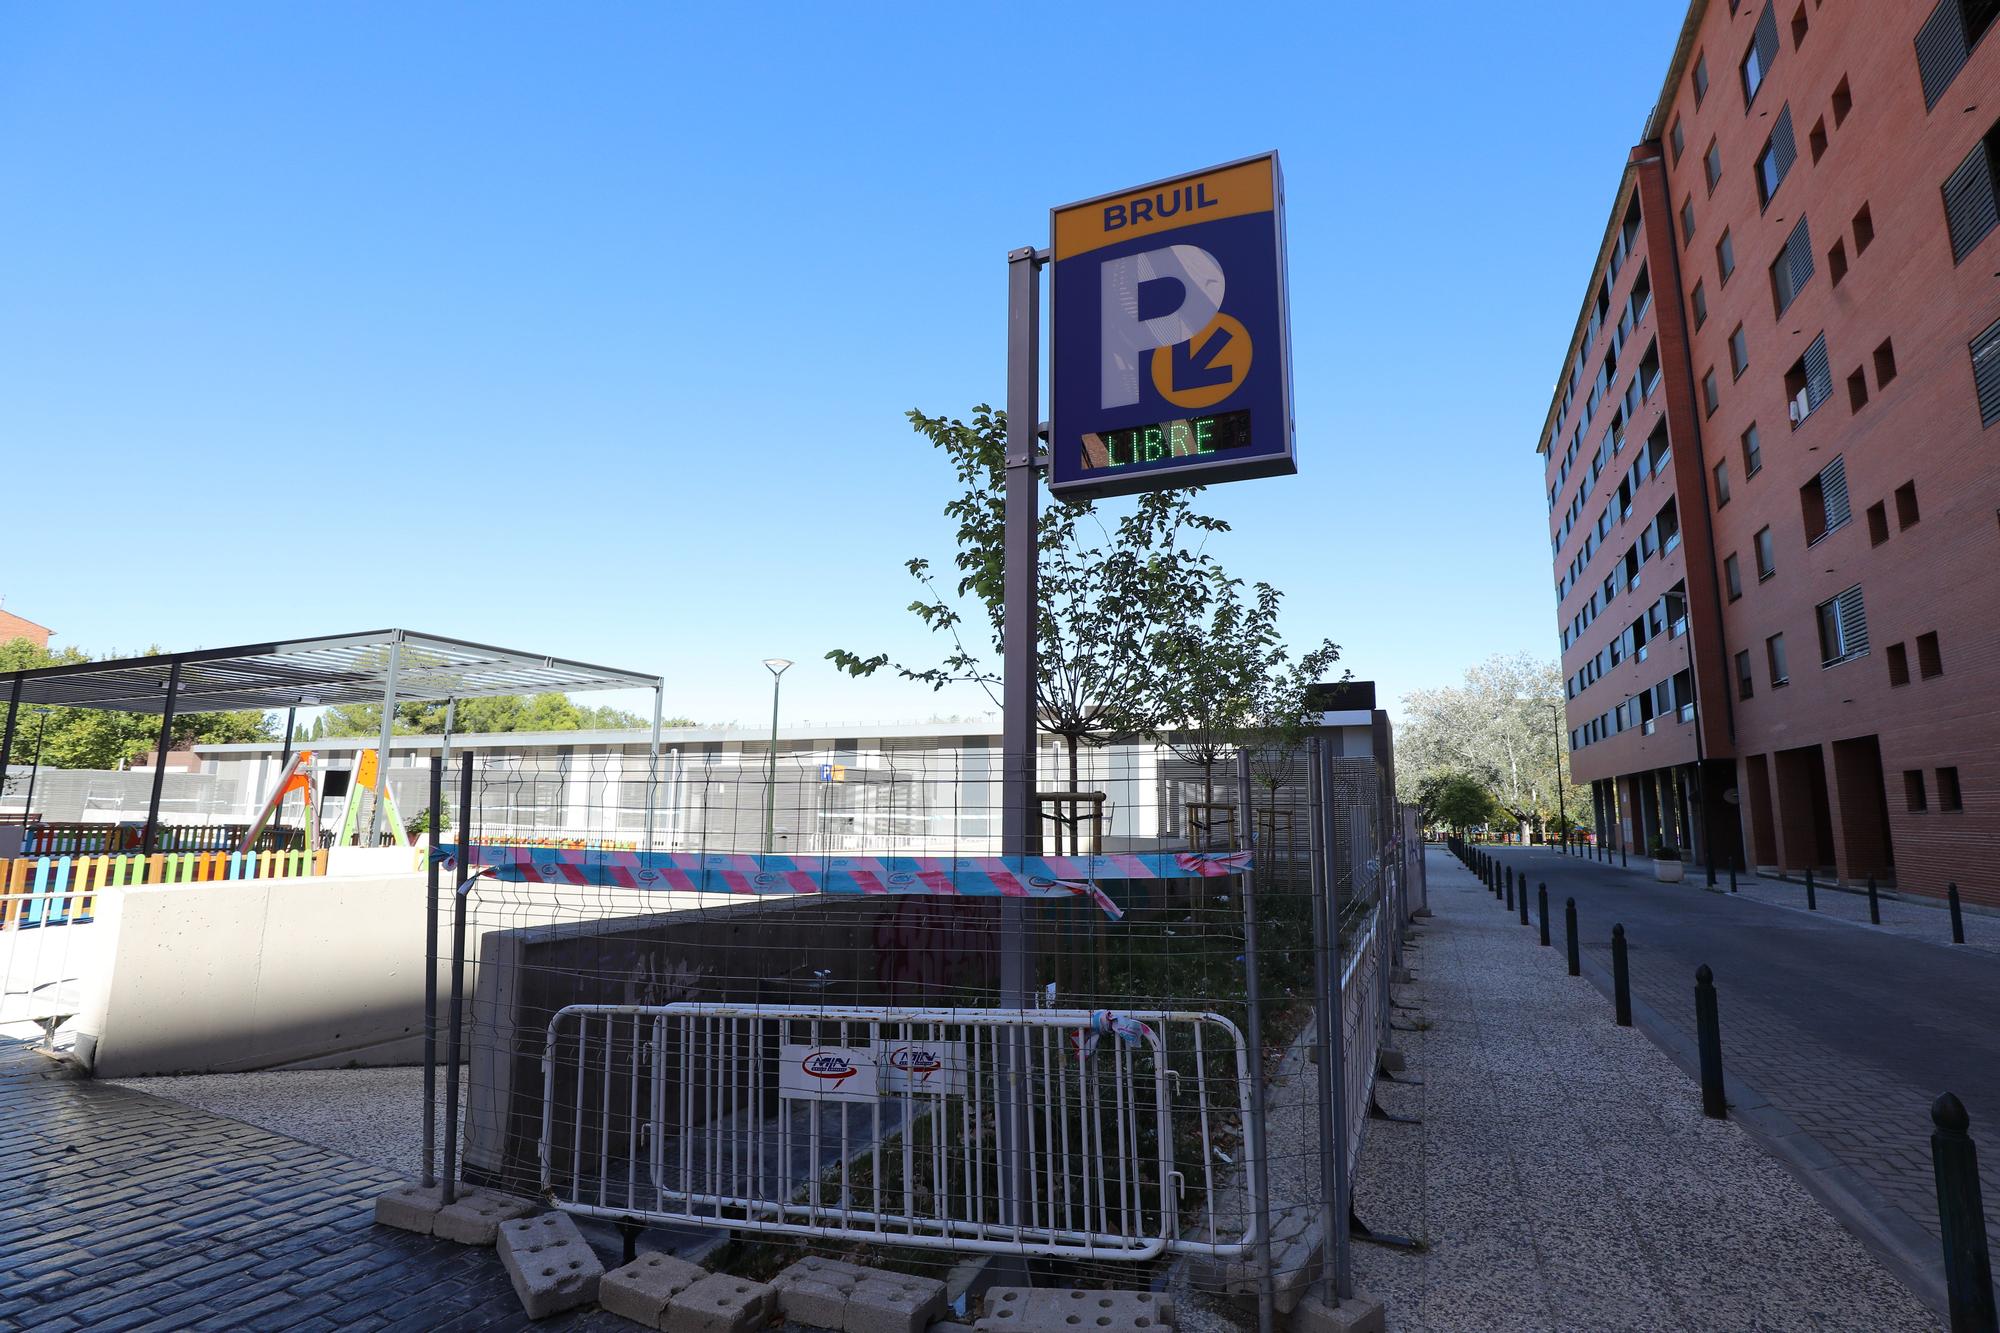 Así luce el nuevo parking del Parque Bruil de Zaragoza